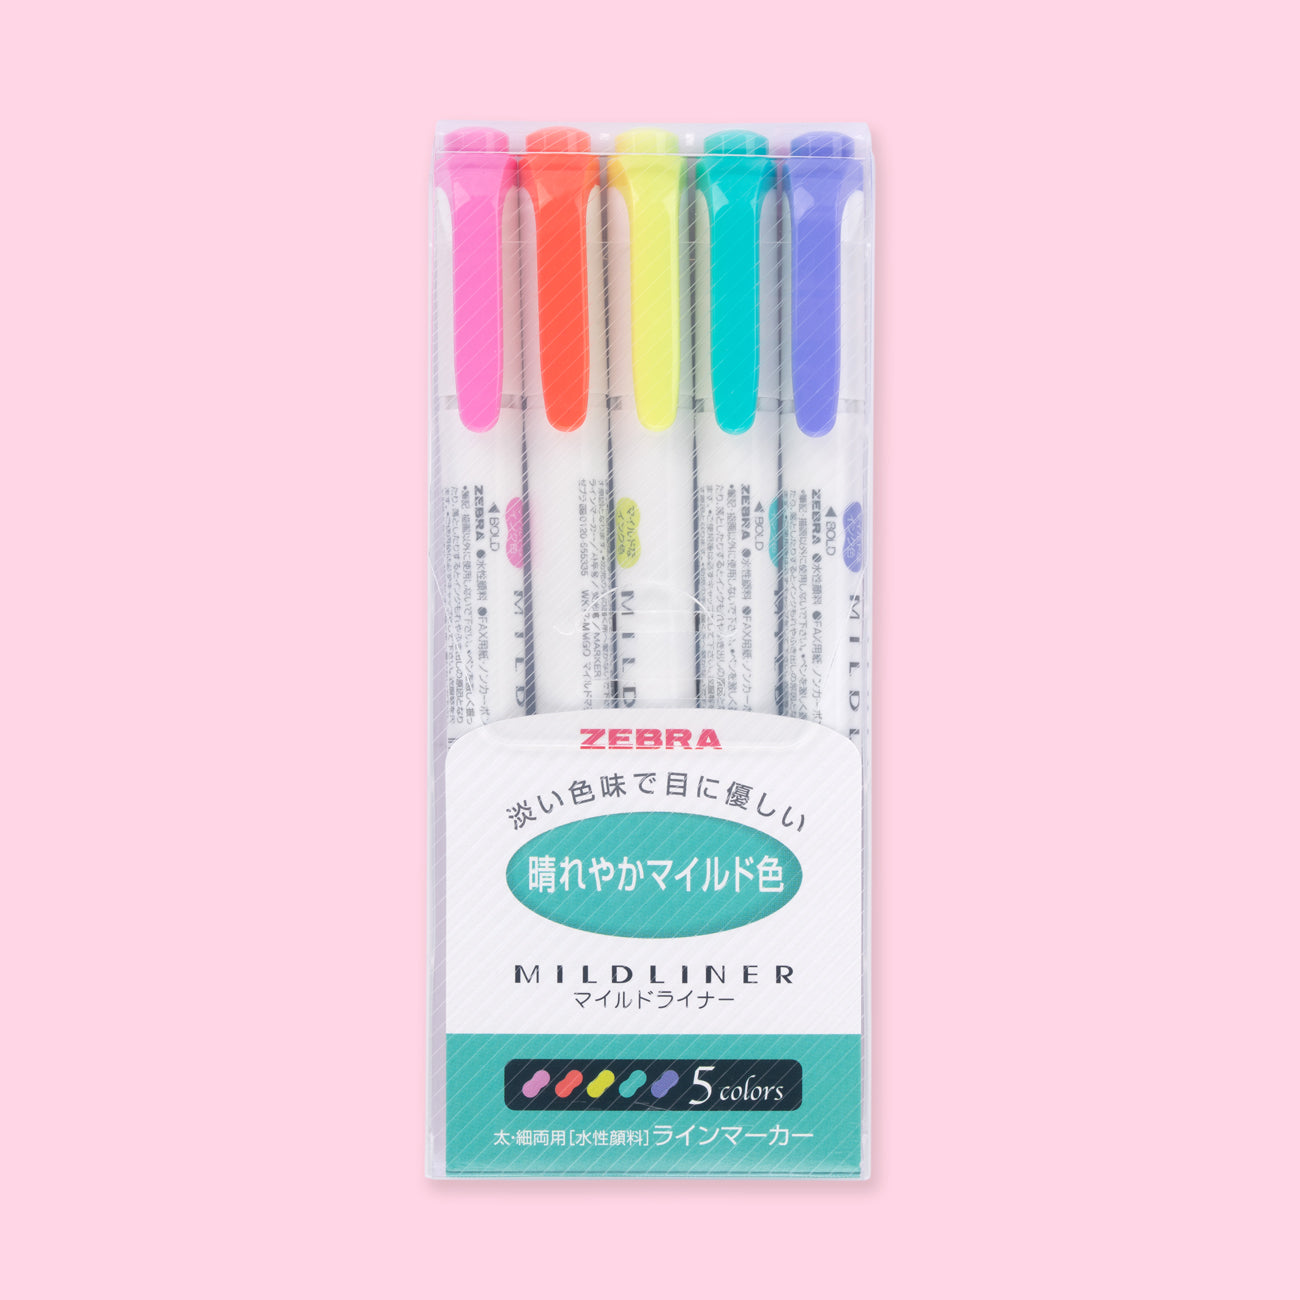 Zebra Pen Mildliner, double ended highlighter, fluorescent colors